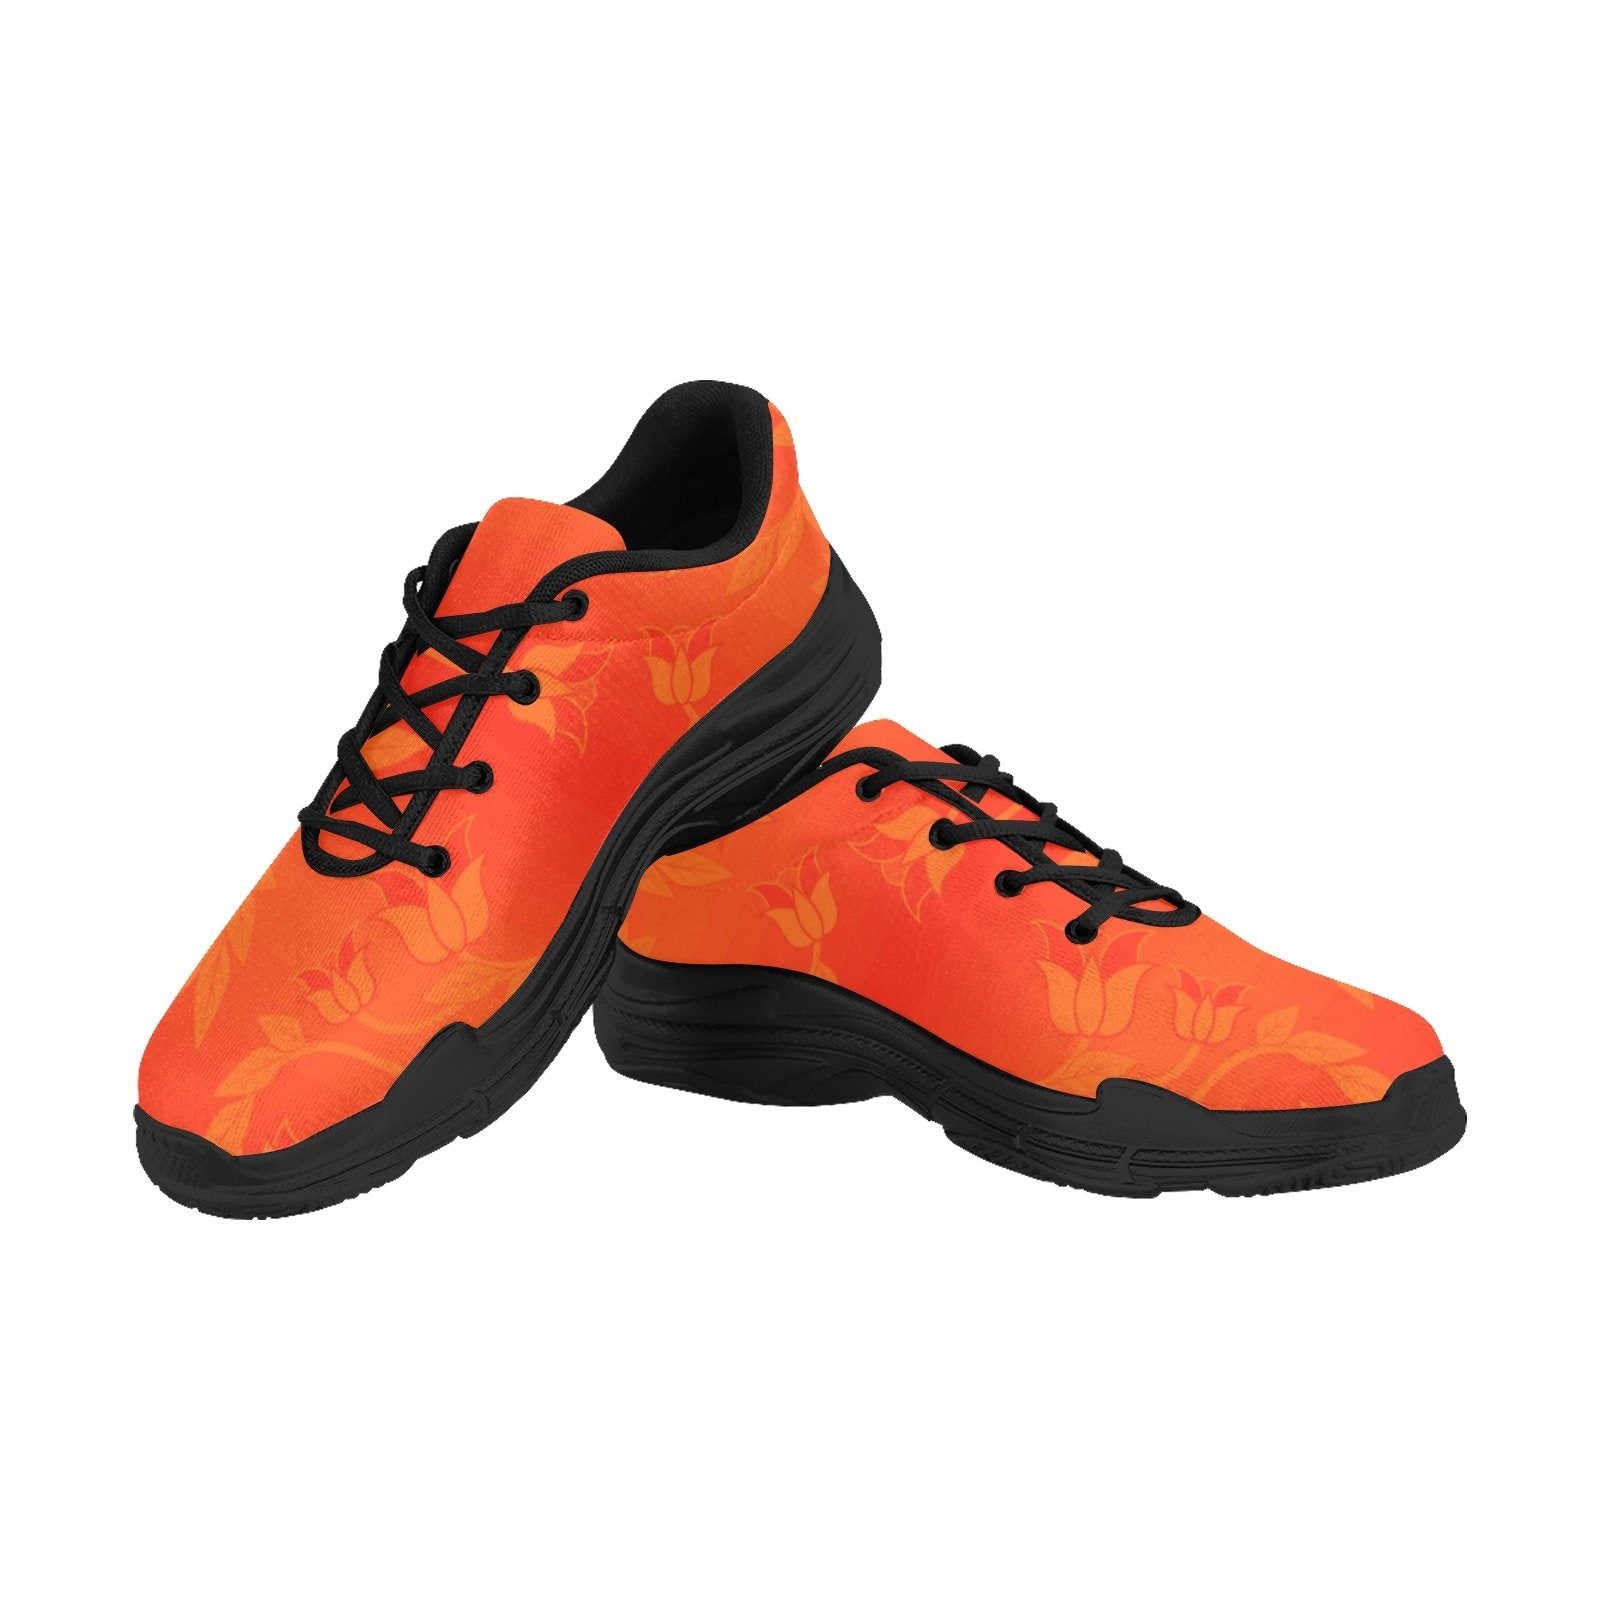 Orange Days Orange Chunky Men's Running Shoes Artsadd US5 Black Sole 